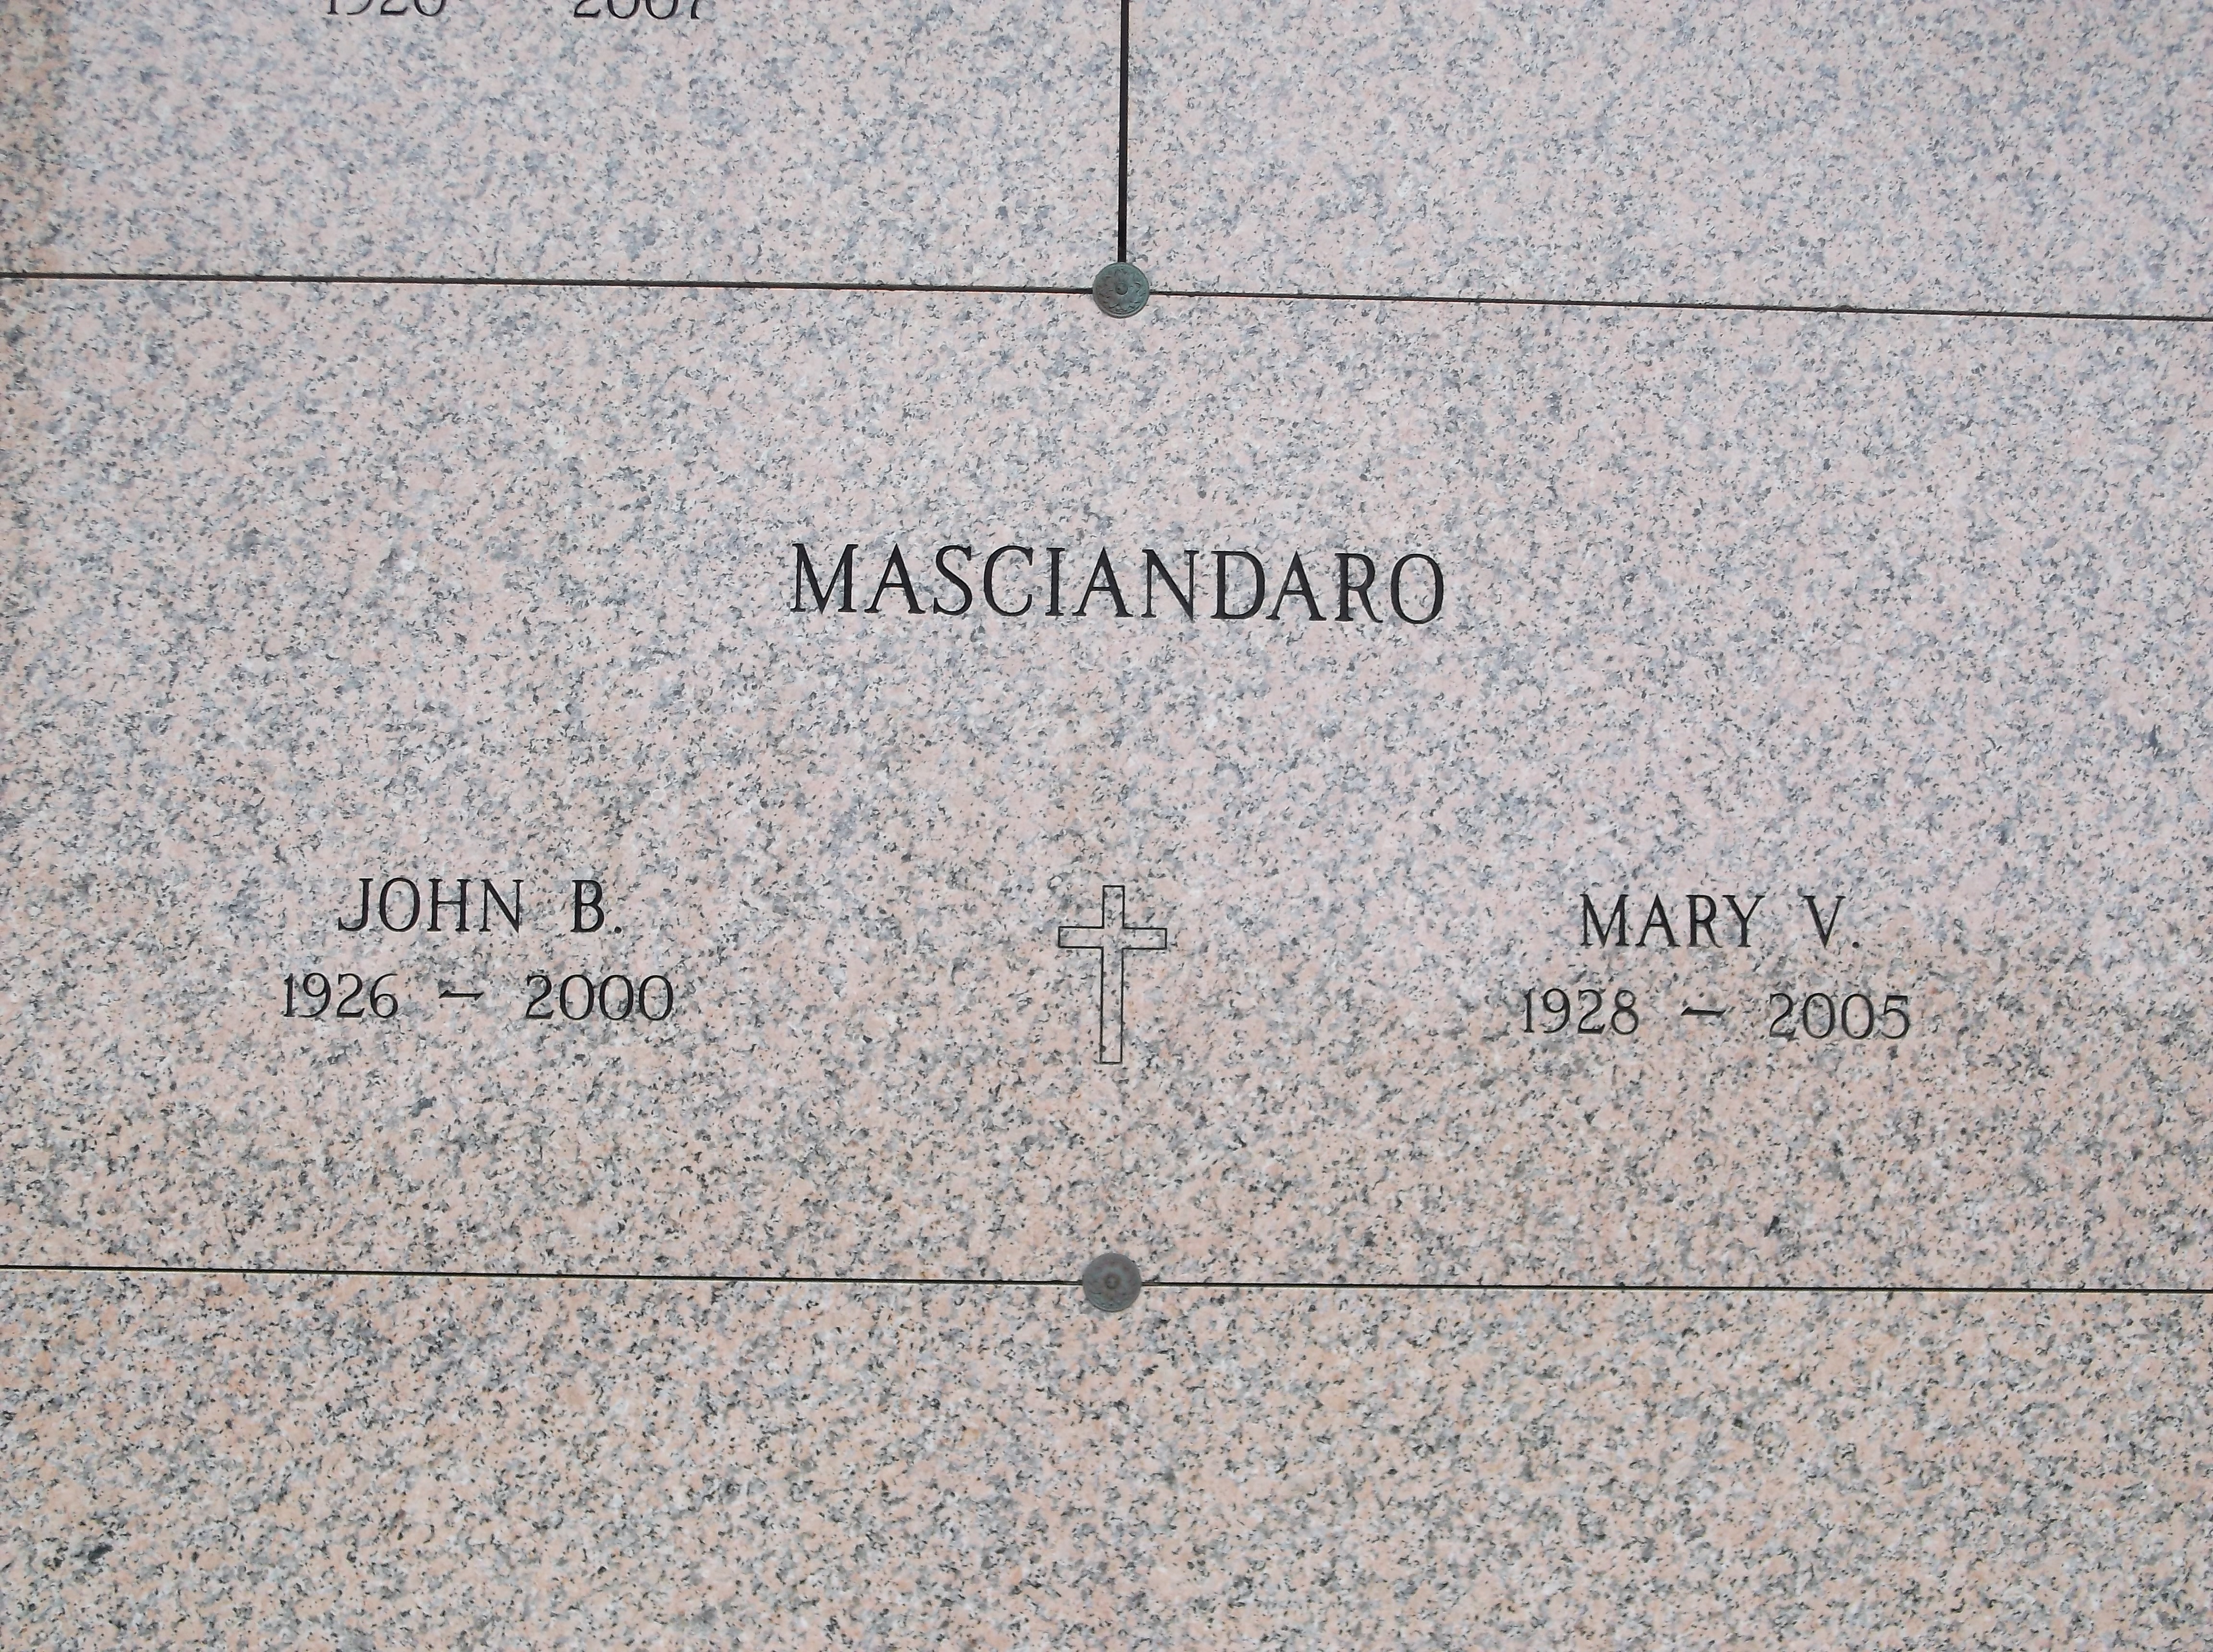 Mary V Masciandaro